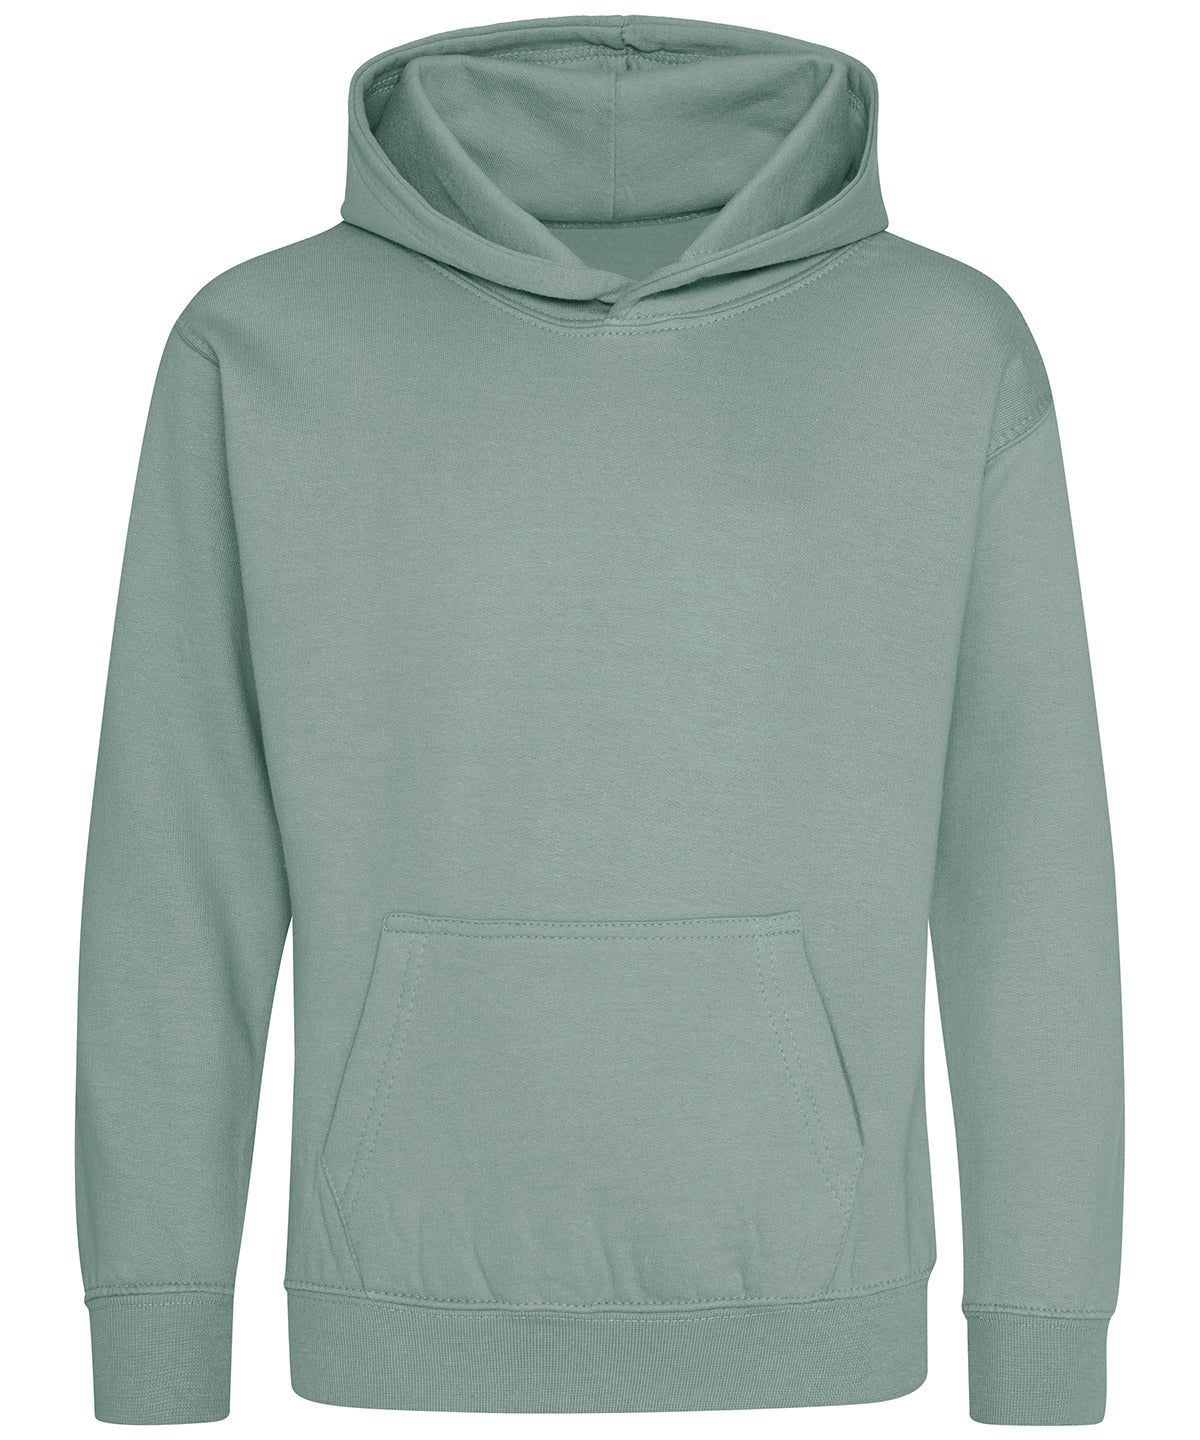 Personalised Hoodies - Heather Grey AWDis Just Hoods Kids hoodie